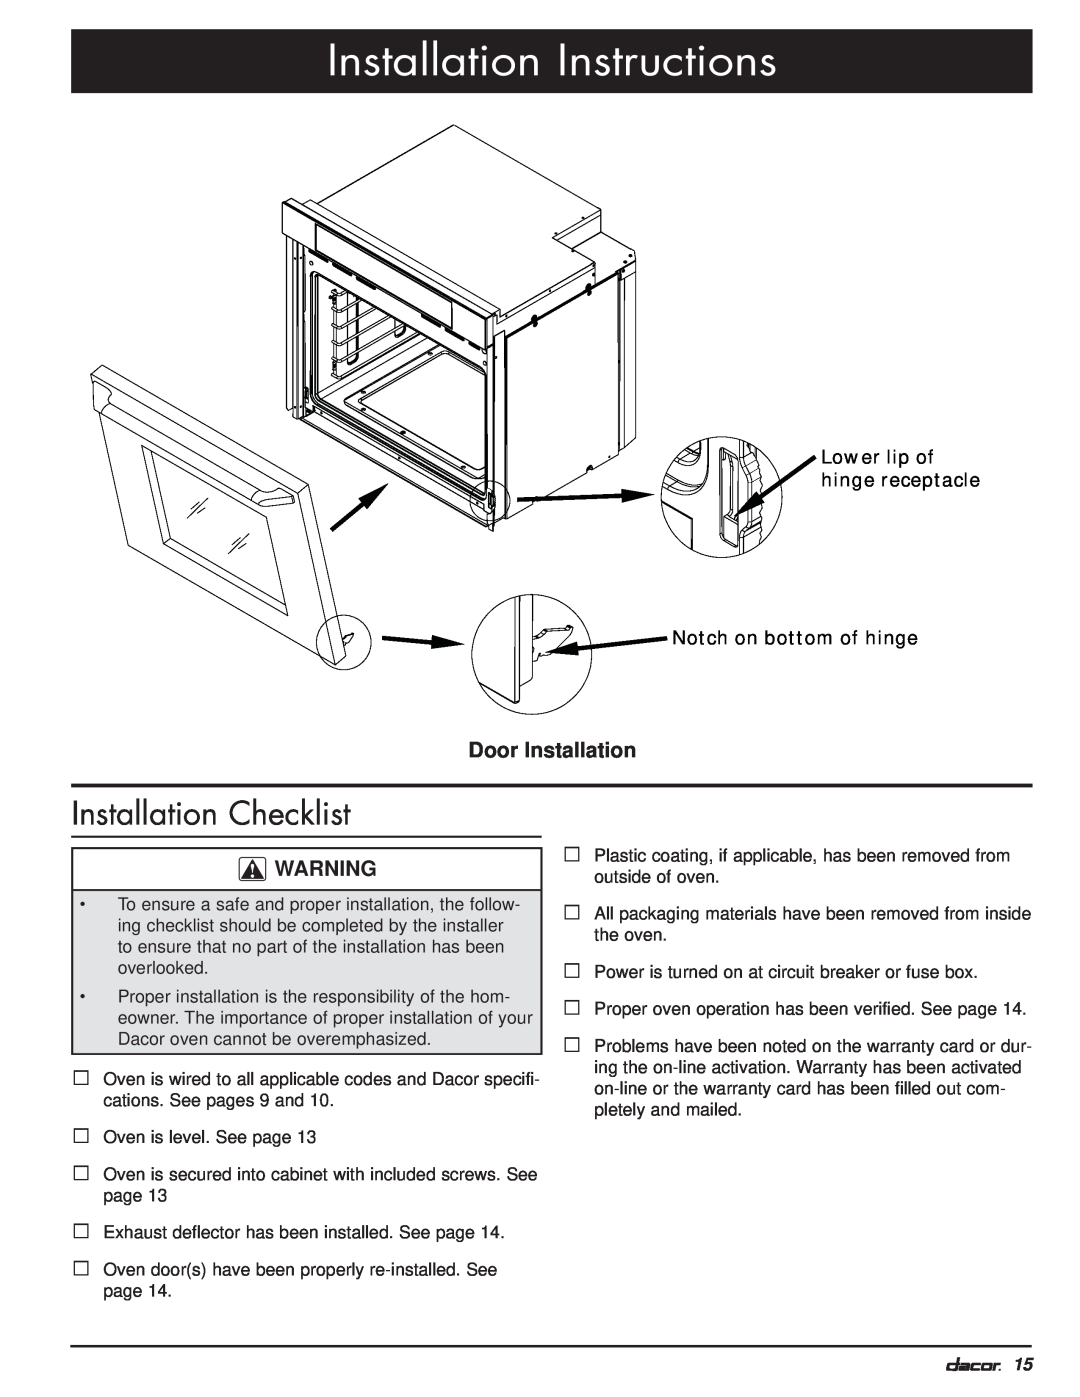 Dacor MO manual Installation Checklist, Door Installation, Installation Instructions, Lower lip of hinge receptacle 